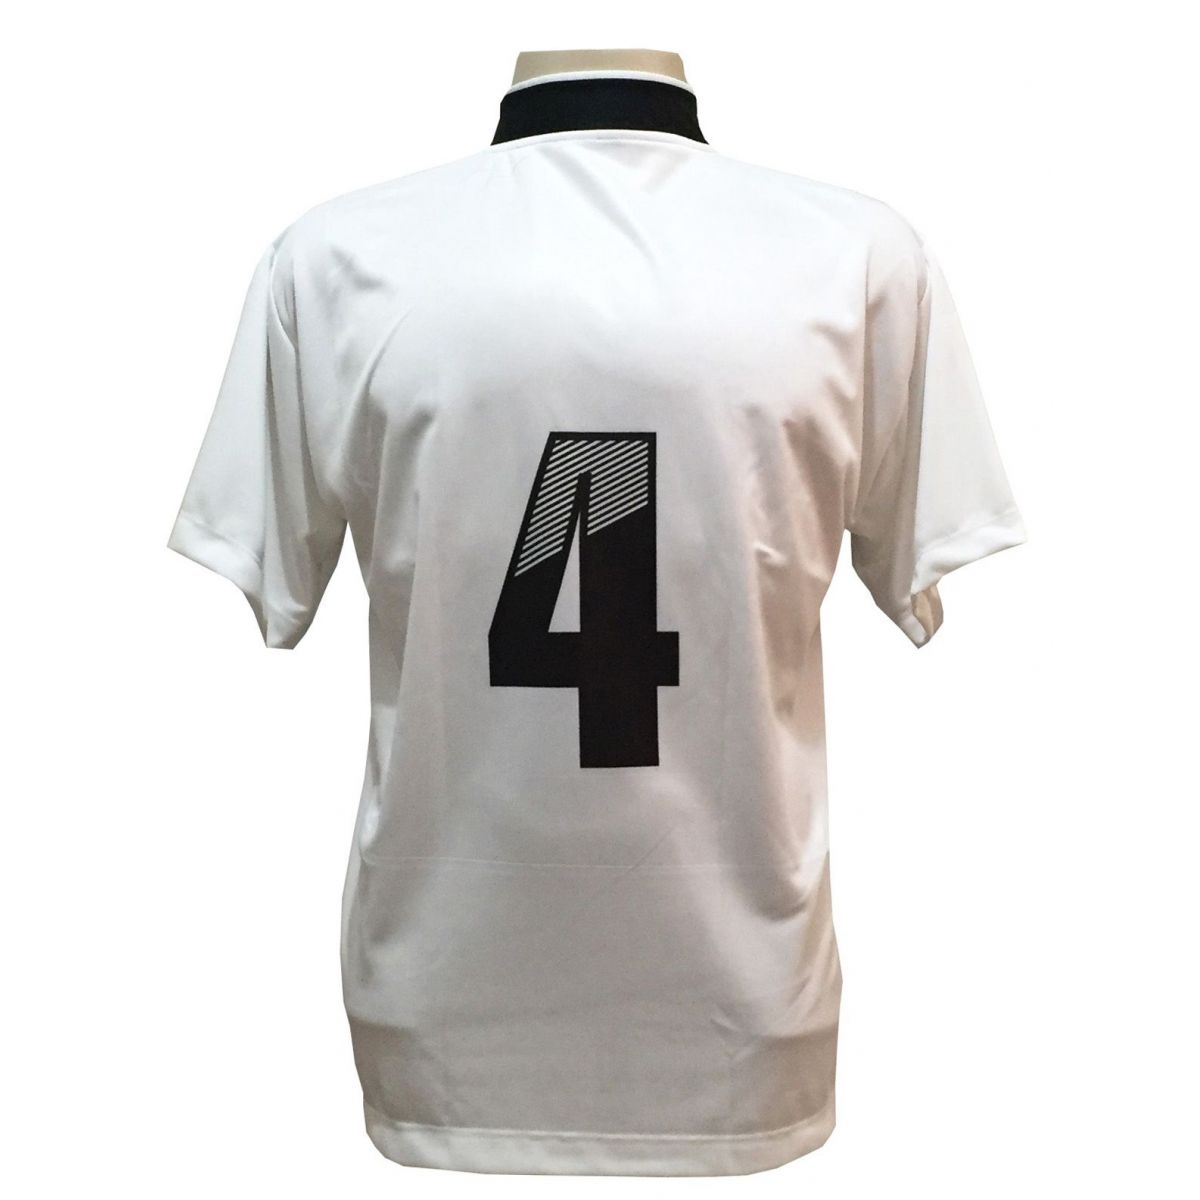 Uniforme Esportivo com 14 camisas modelo Suécia Branco/Preto + 14 calções modelo Madrid Branco + Brindes